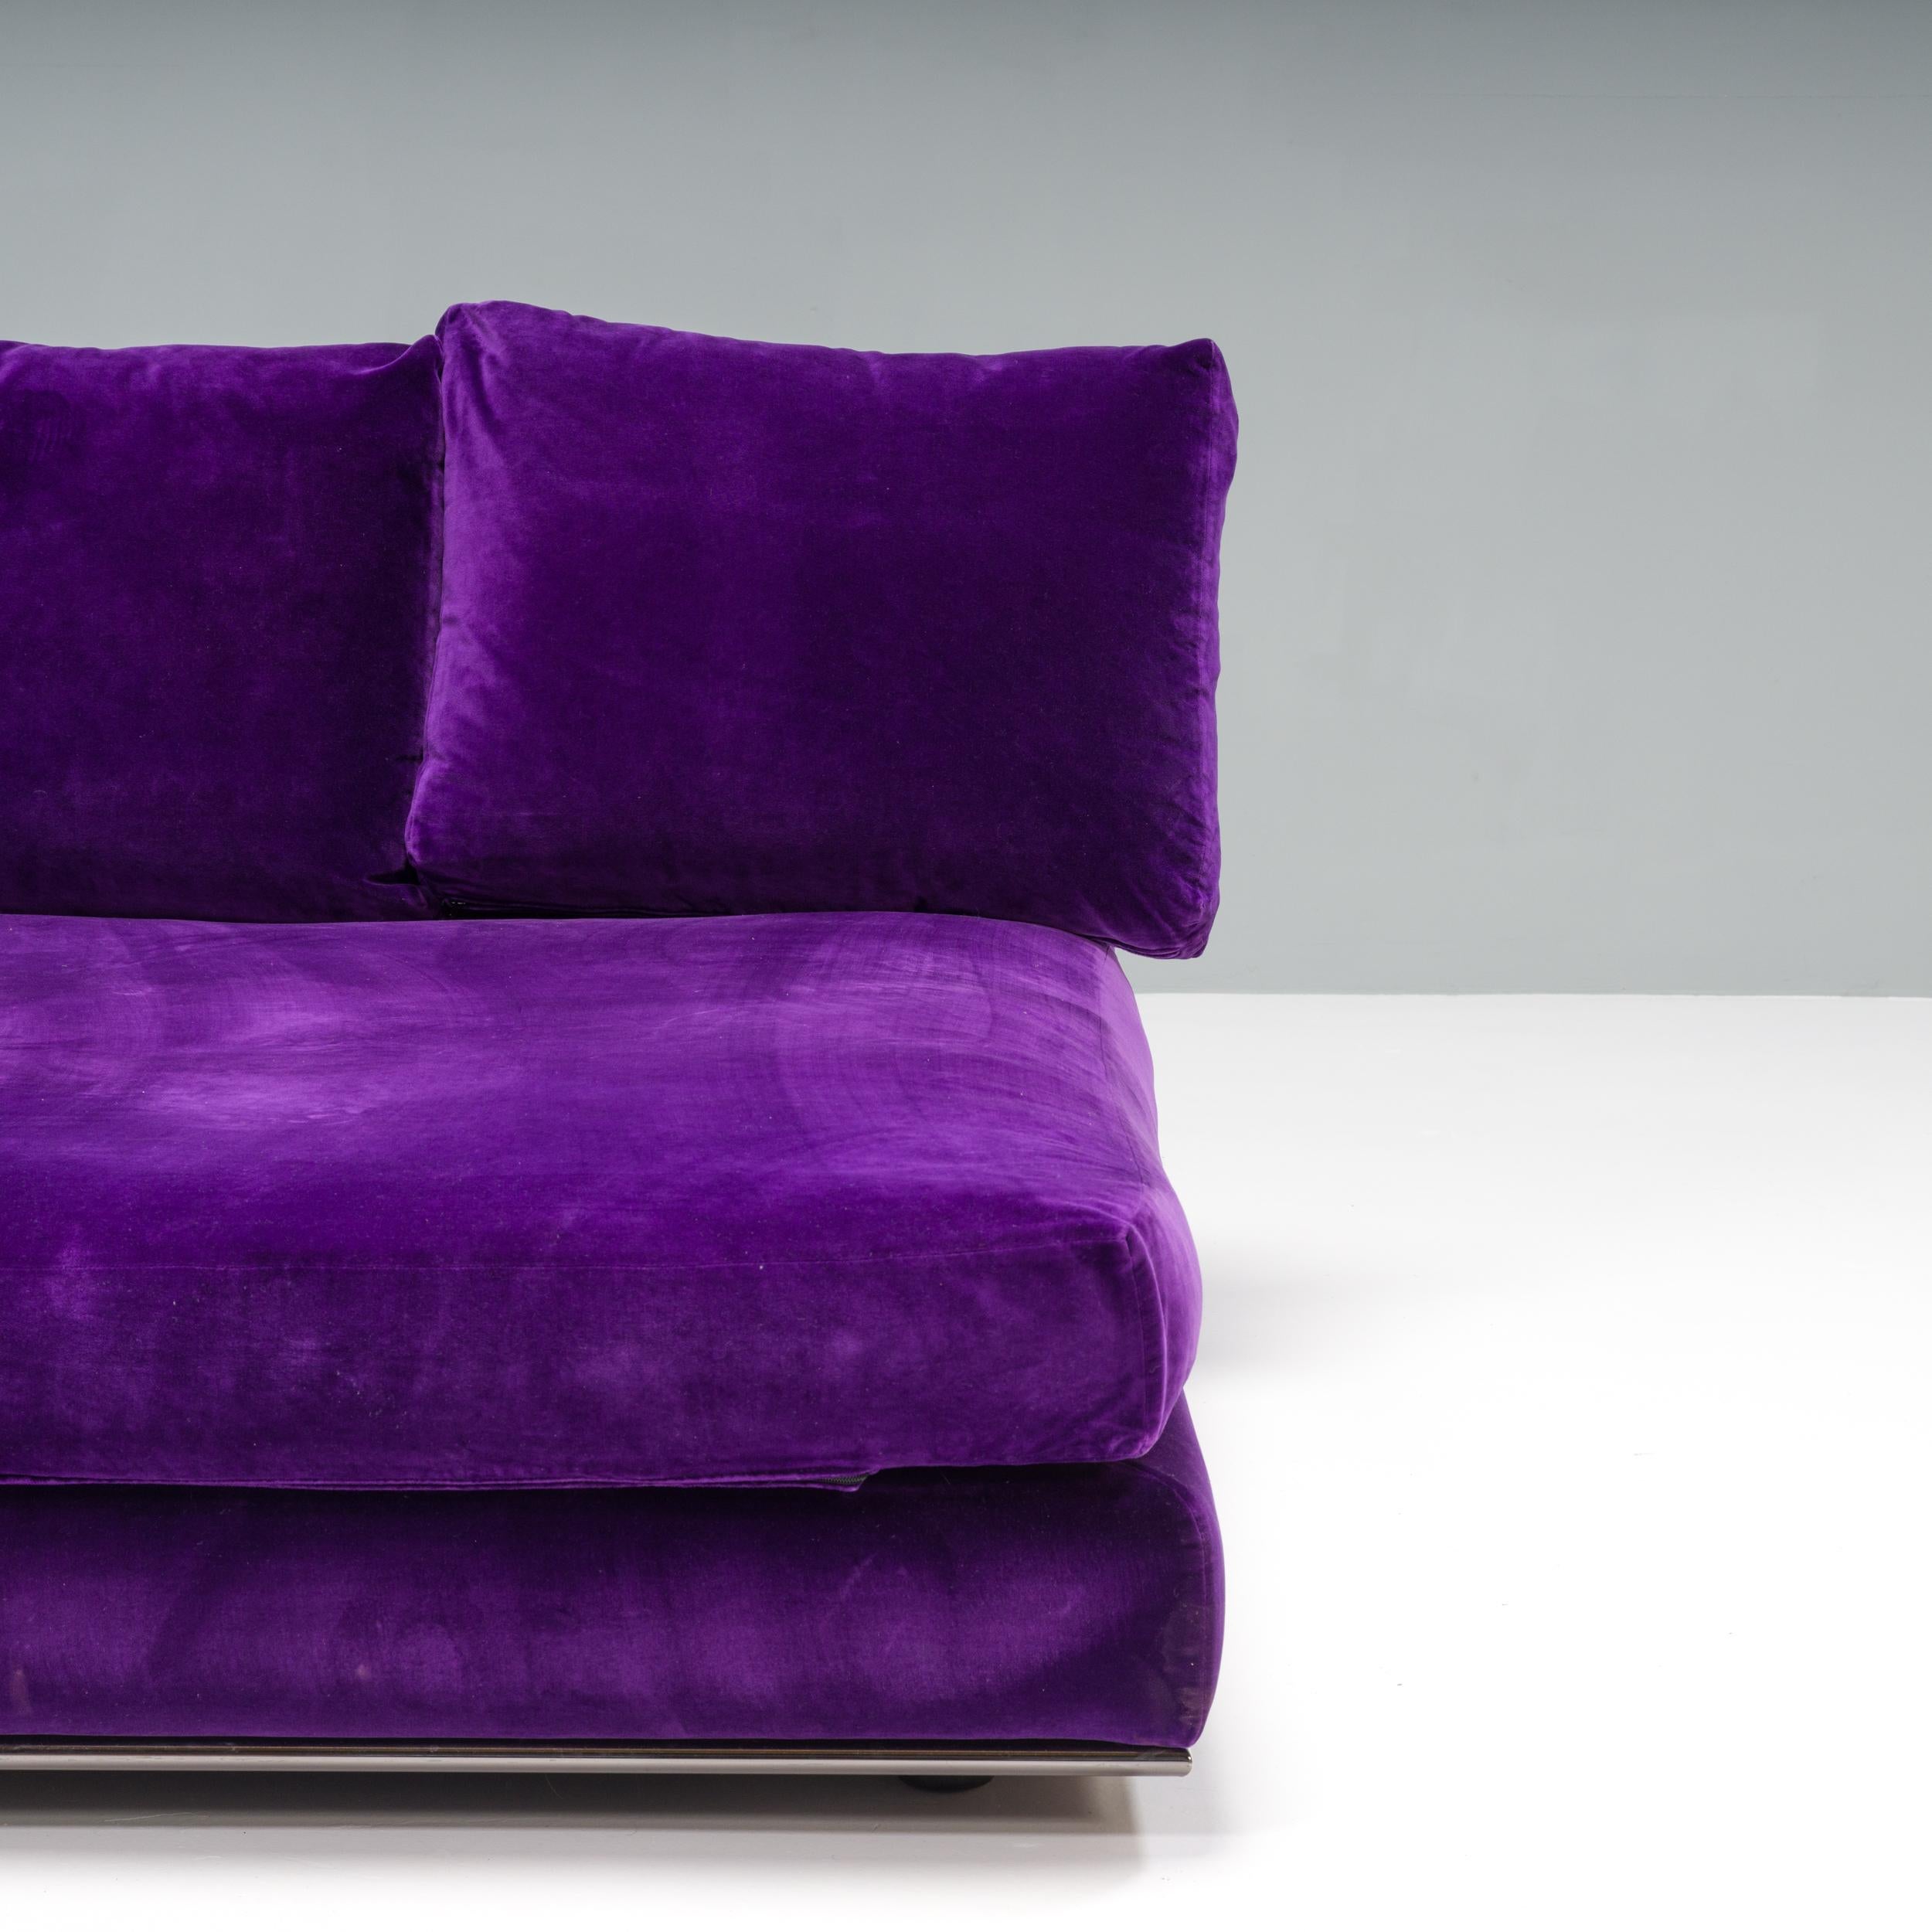 Conçu par Minotti, ce lit de jour permet de se prélasser luxueusement. Avec des proportions généreuses, le lit repose sur un cadre chromé fin qui donne l'impression de flotter légèrement au-dessus du sol.

Entièrement recouvert d'un velours violet